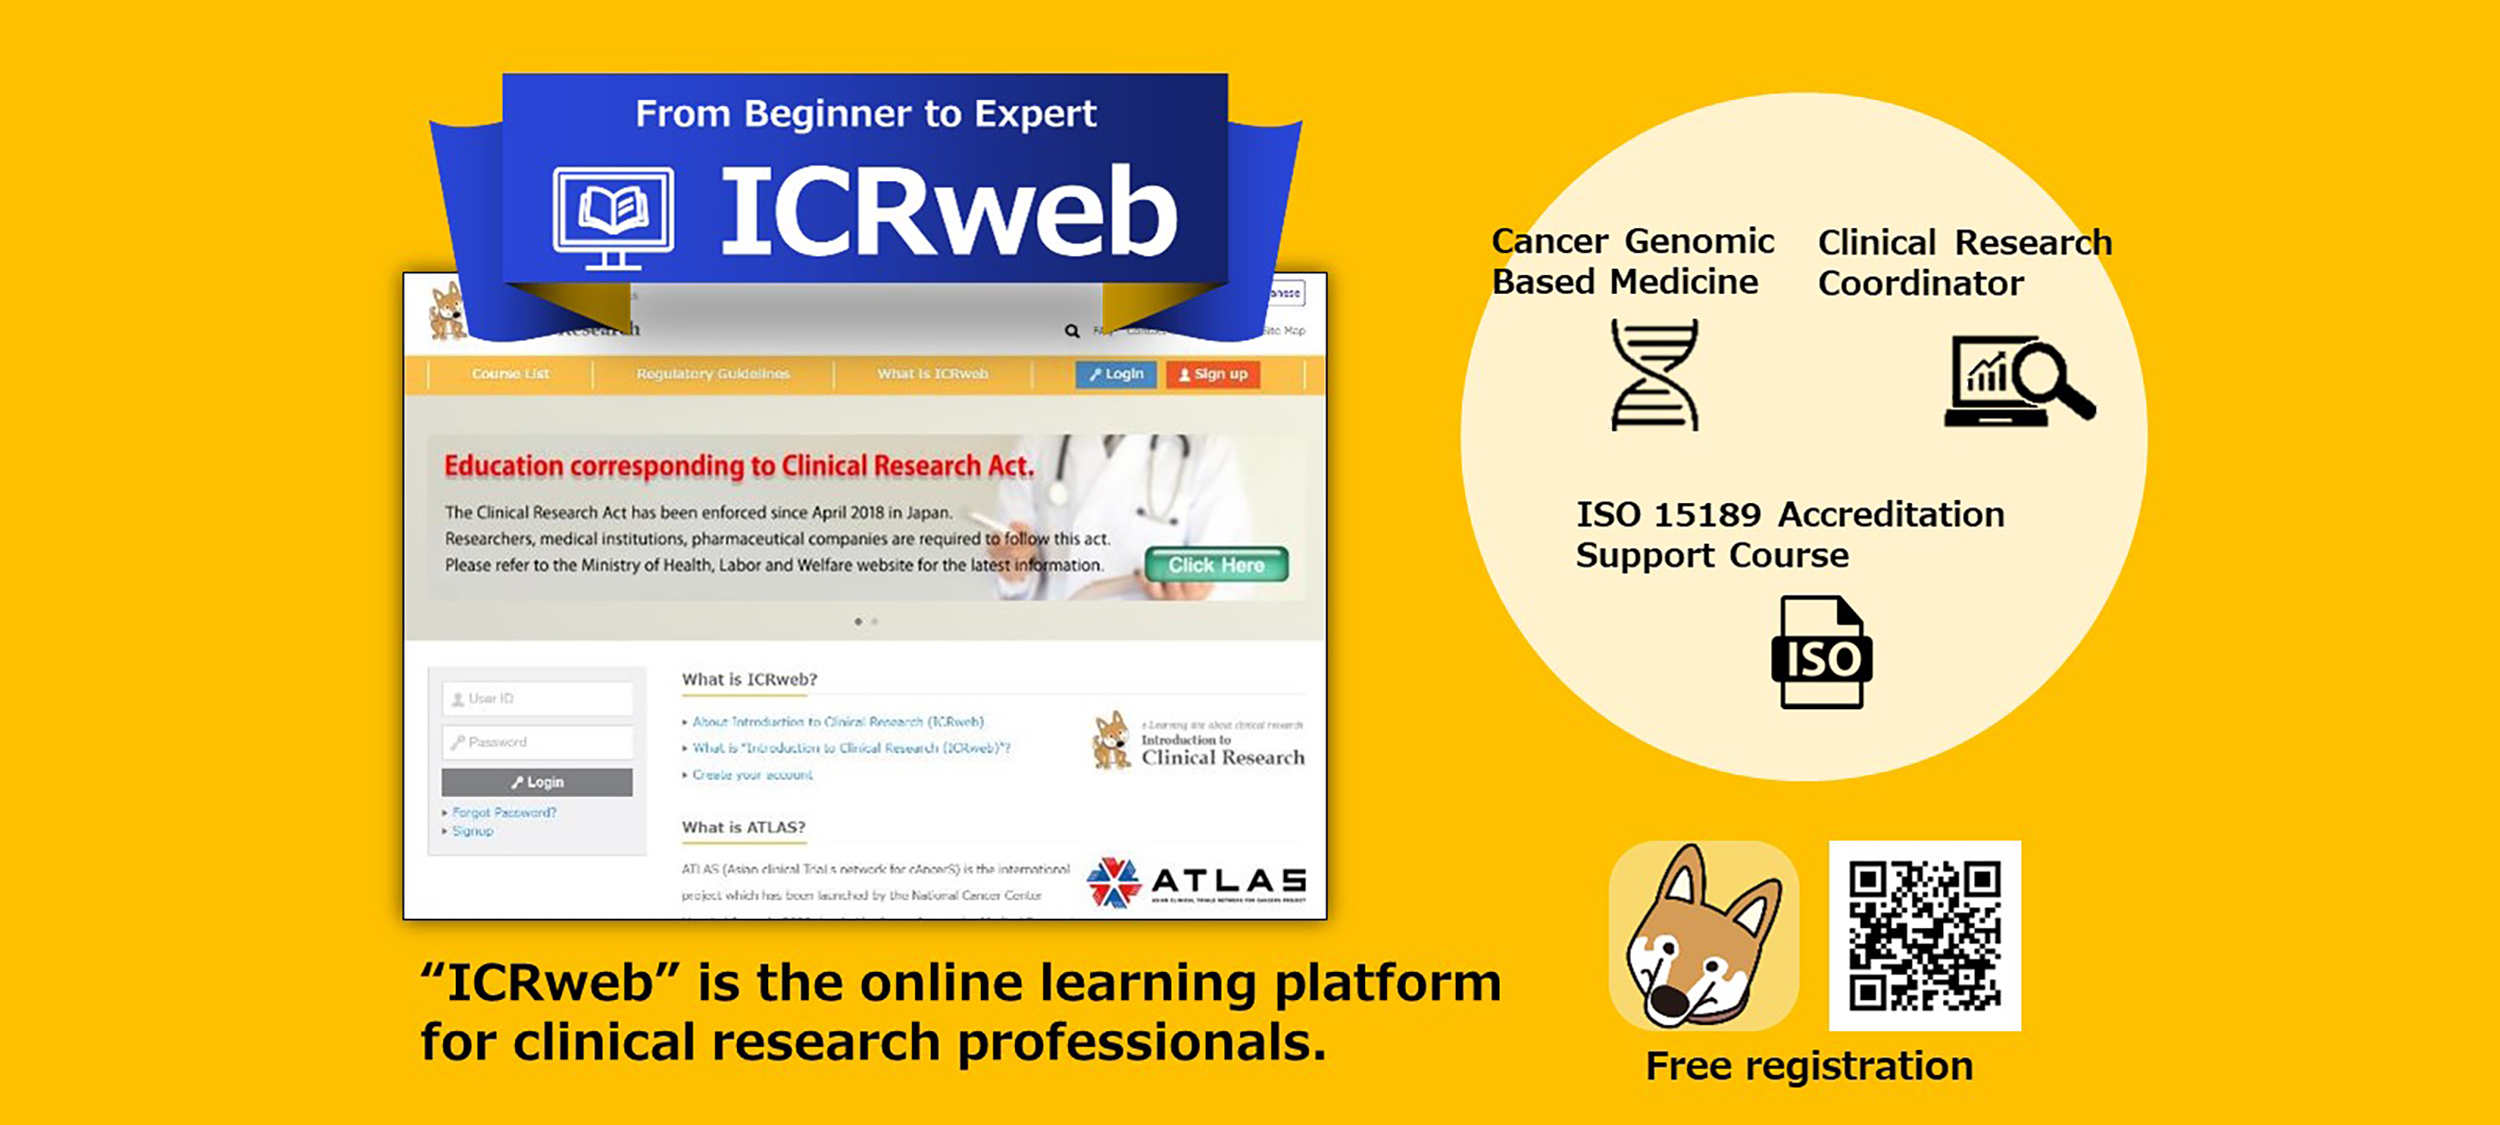 ICR web